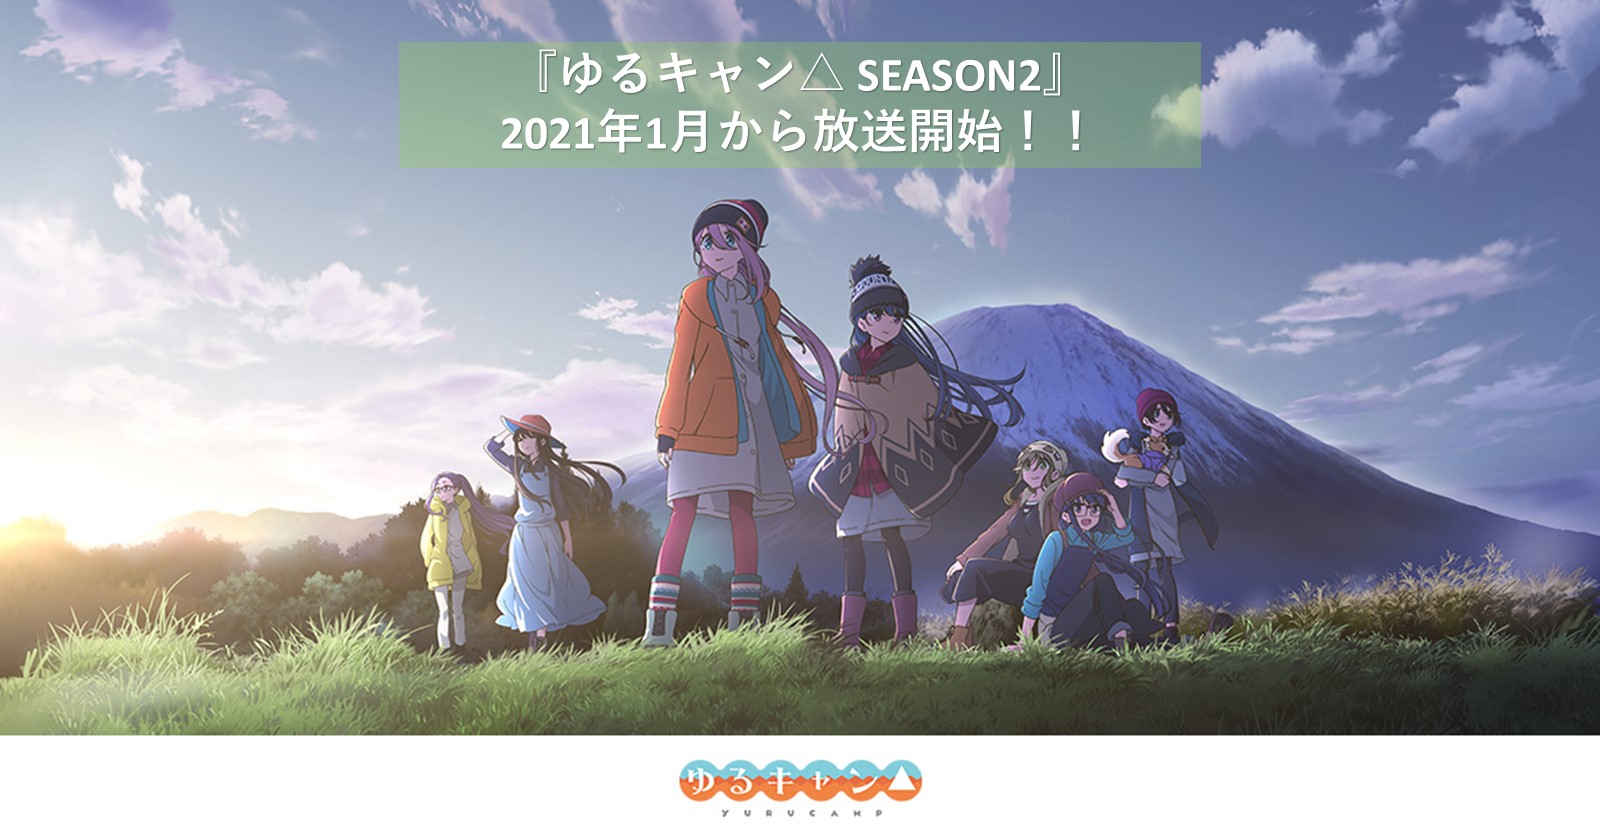 アニメ ゆるキャン Season2 の放送が21年1月からスタート アウトドア系ガールズストーリー再び キャンプ アウトドア のtakibi タキビ